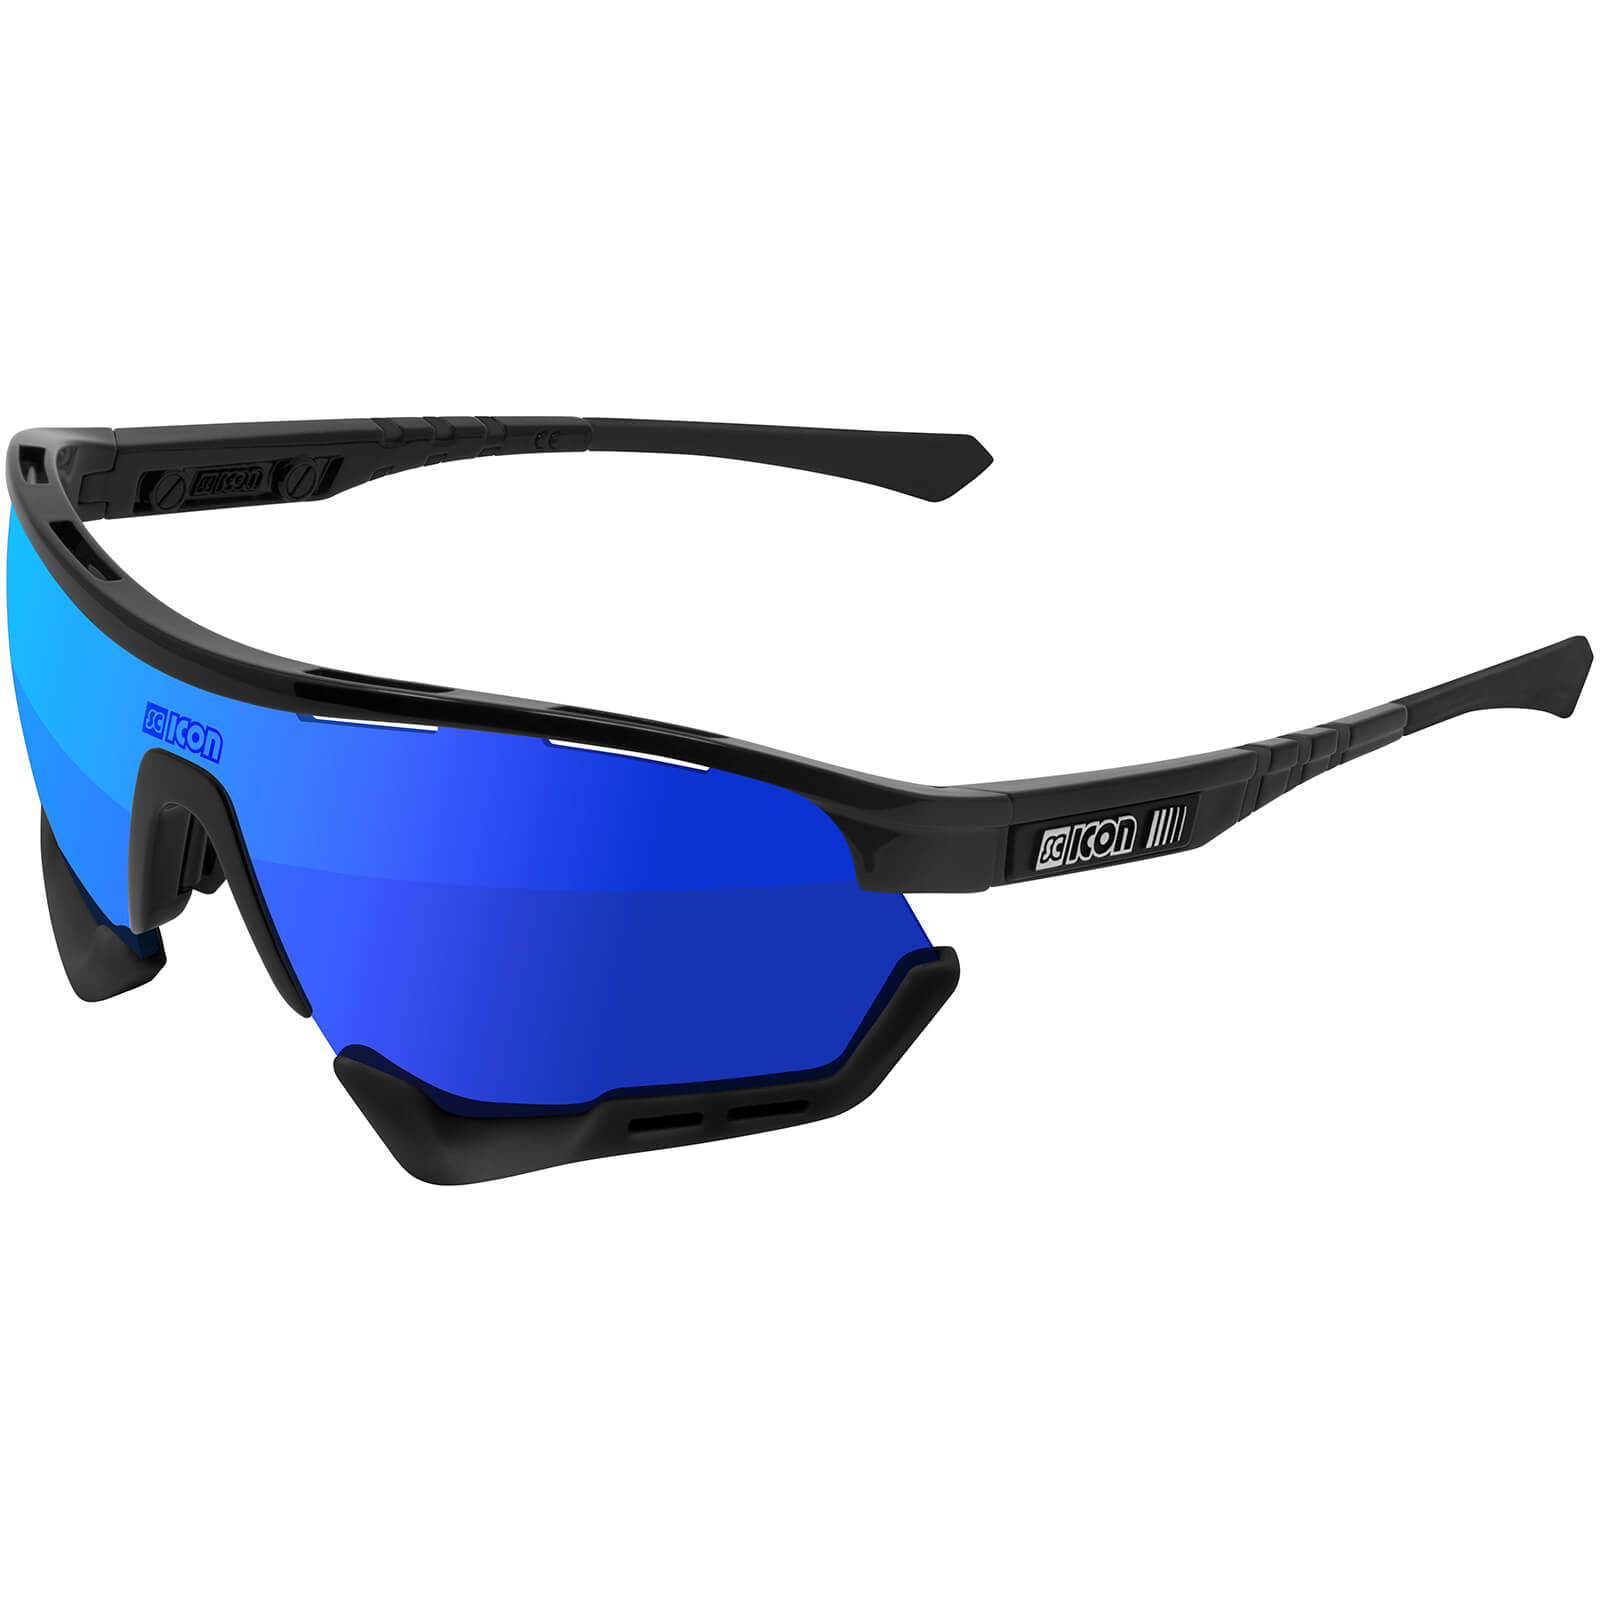 Scicon Aerotech XL Road Sunglasses - Black Gloss/SCNPP Multilaser Blue